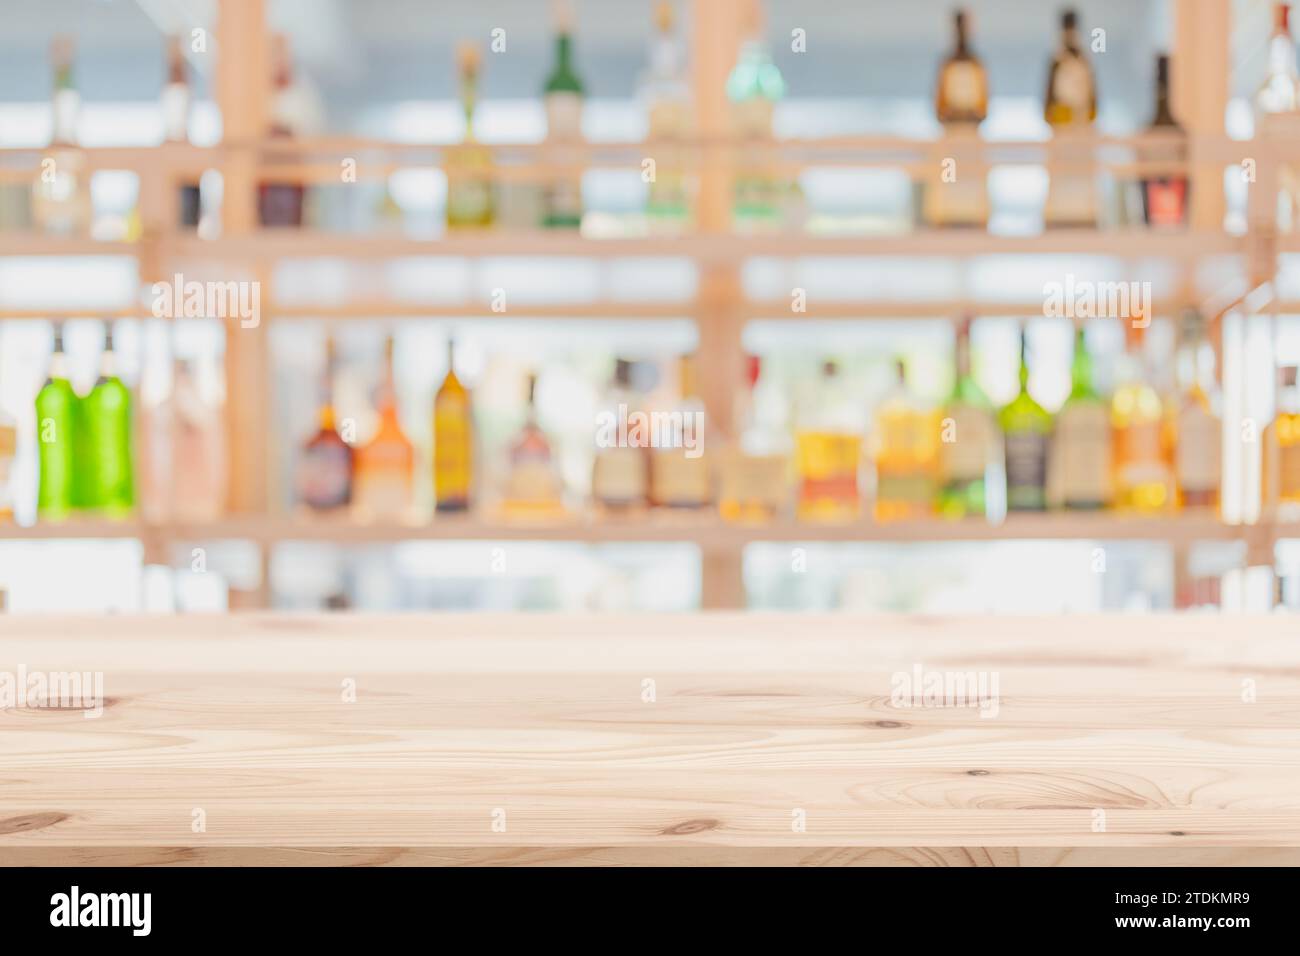 blur cocktail pub, ristorante, banco bar in legno con bottiglie di alcol, miscelatore di bevande pieno sullo sfondo dello scaffale per il montaggio pubblicitario. Foto Stock